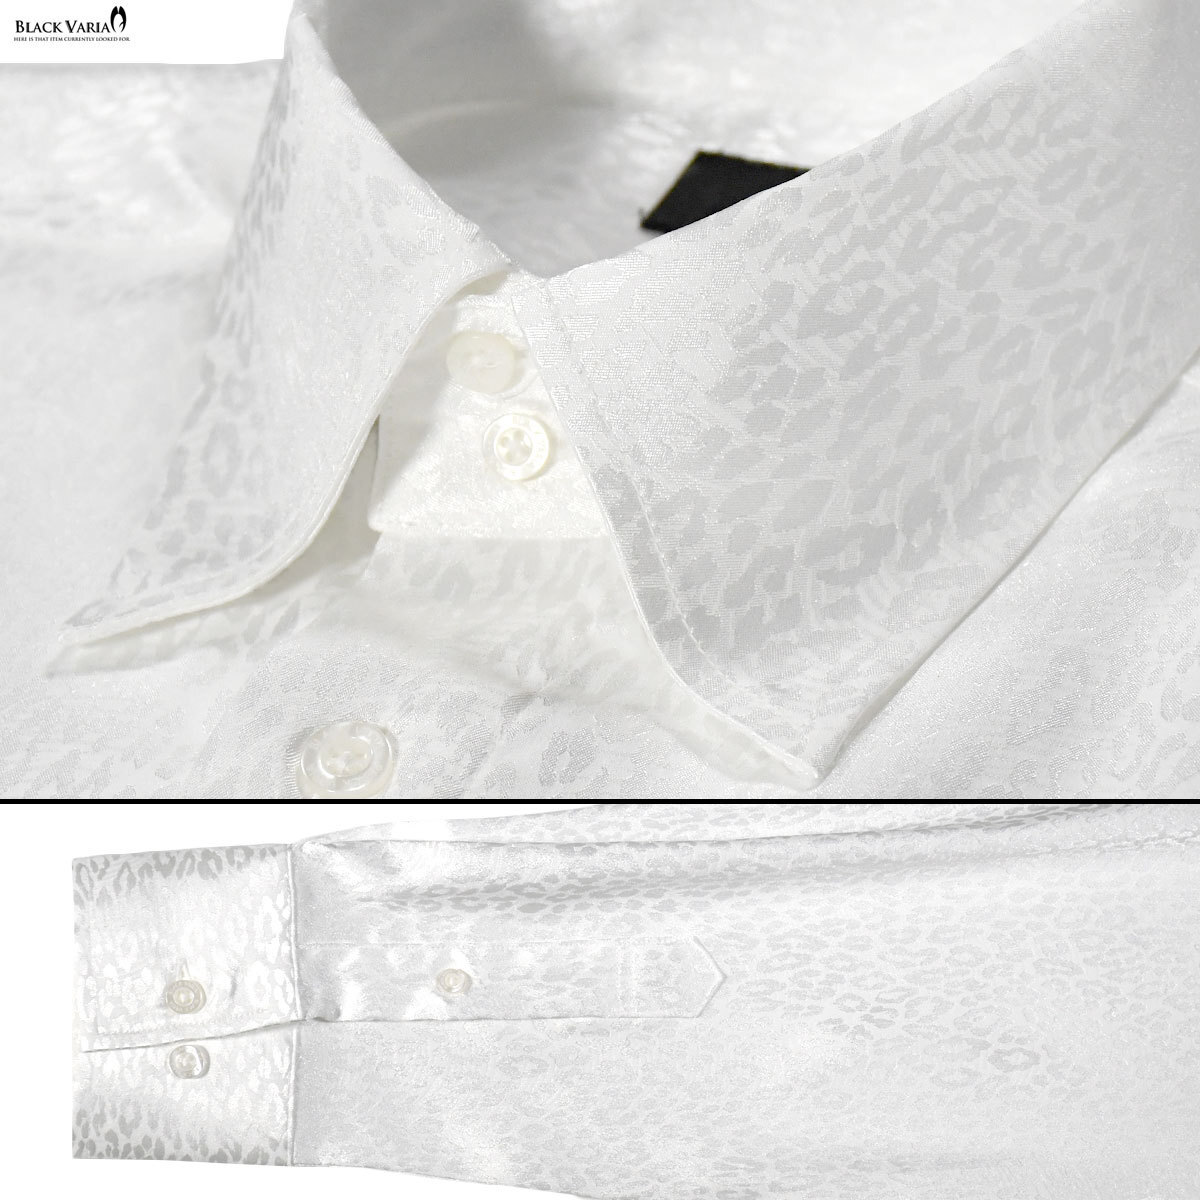 a181710-wh BLACK VARIA ドゥエボットーニ ヒョウ柄 豹 ジャガード レギュラーカラードレスシャツ 日本製 メンズ(ホワイト白) S ステージ_画像5